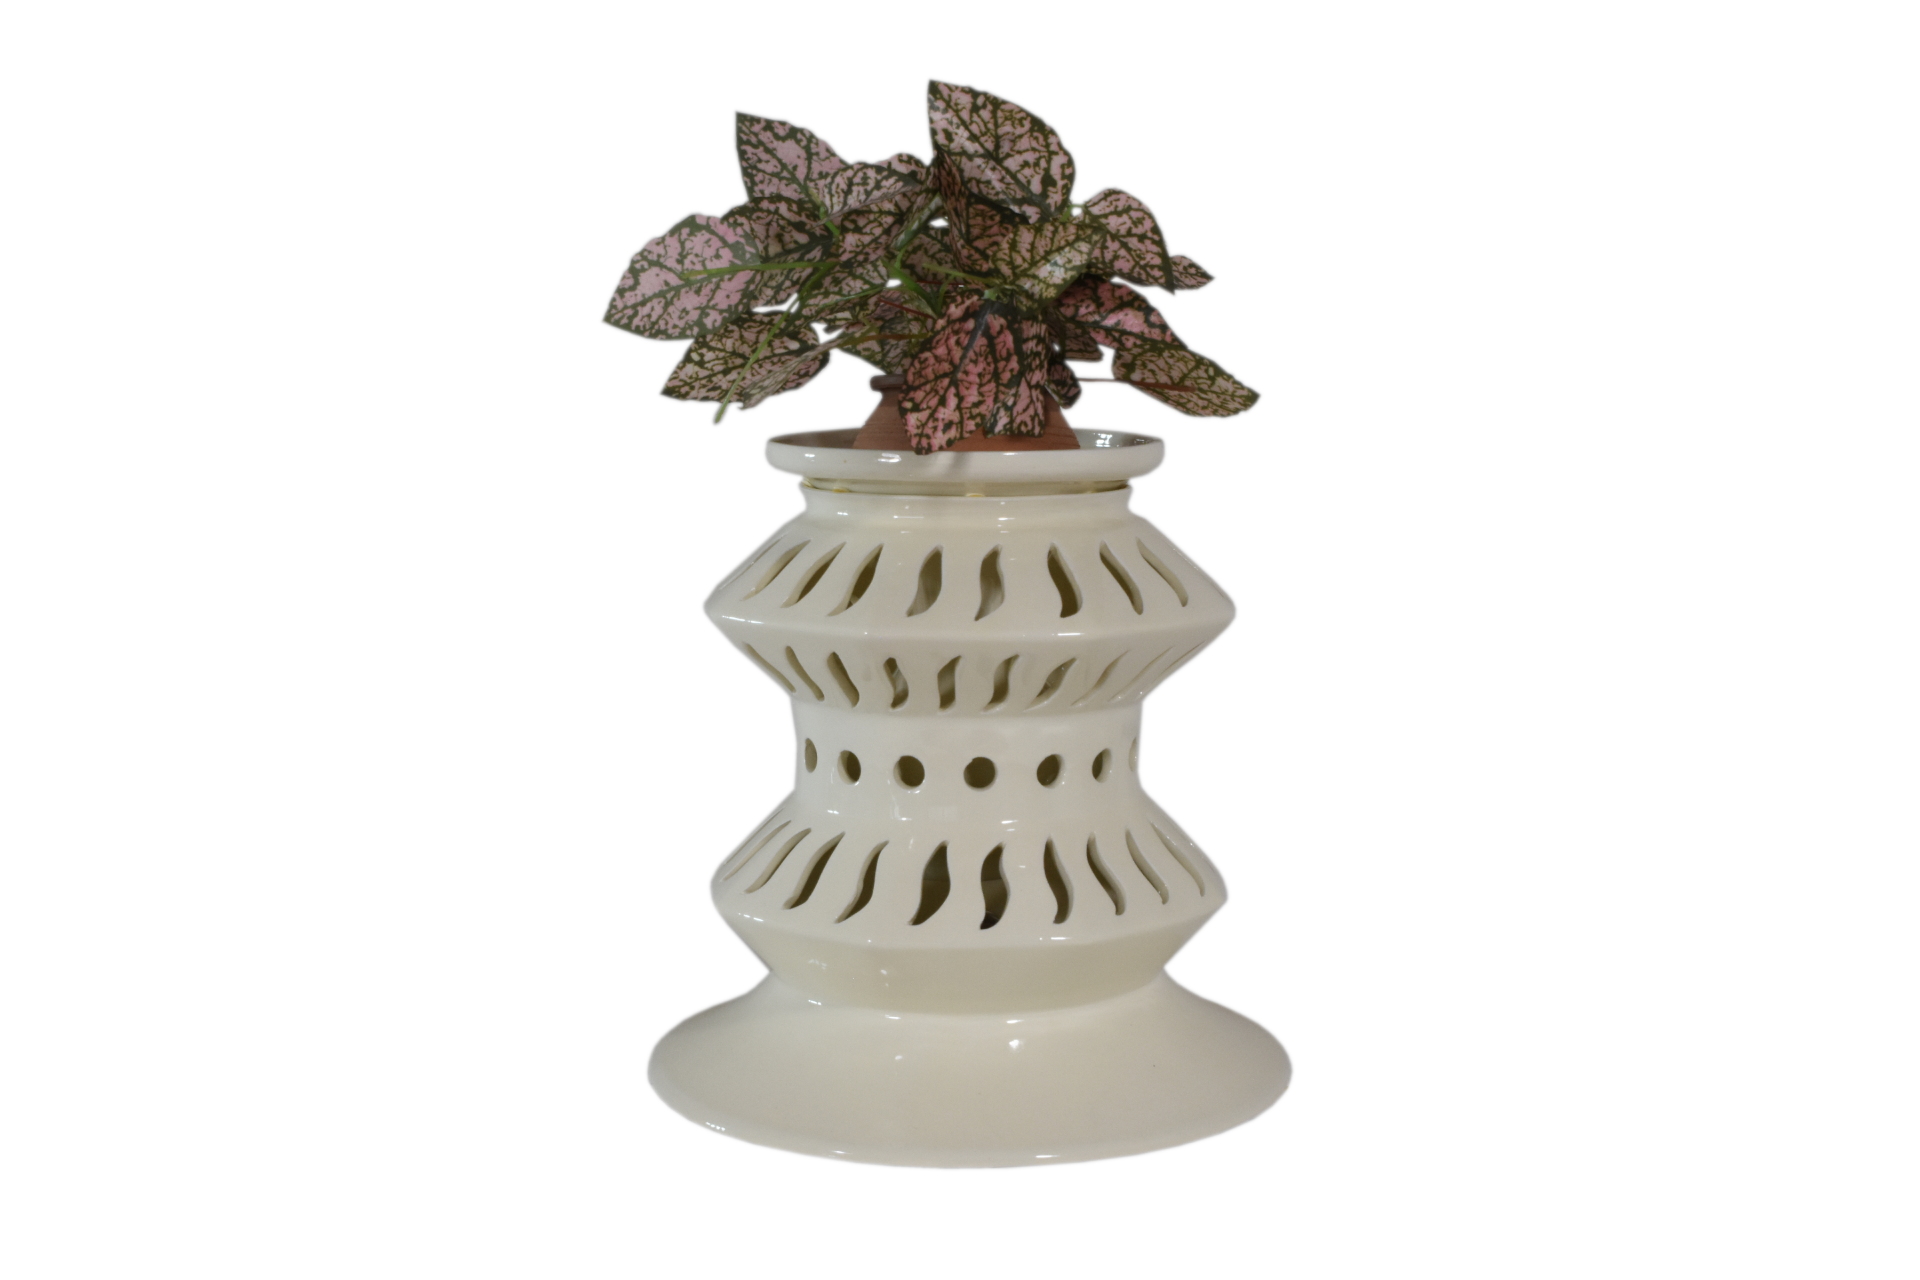 Voortdurende picknick Verdragen Blumentopf Lampe in perforierter Keramik, in Säulen Form , handgefertigt in  Italien.